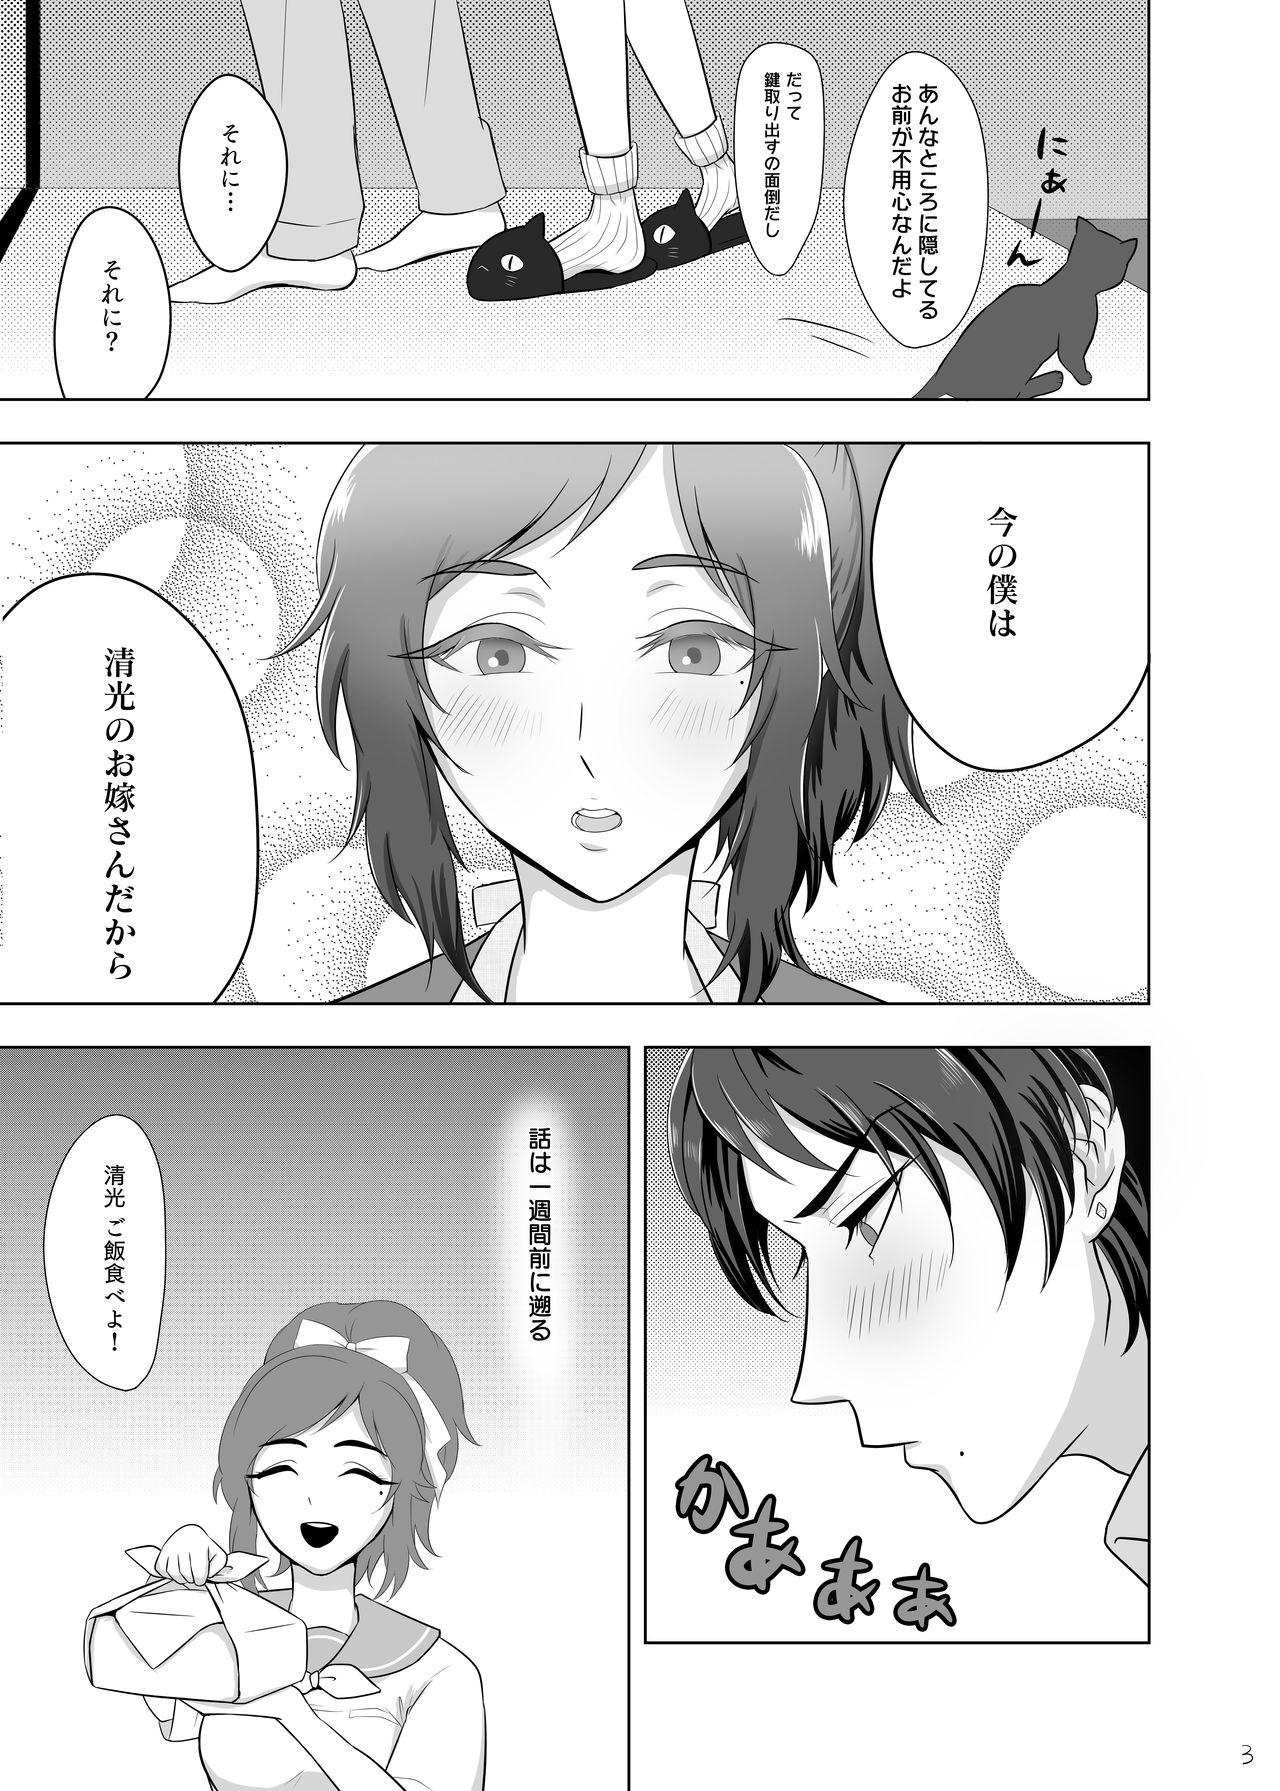 Fuck おためし細君 - Touken ranbu Female - Page 5